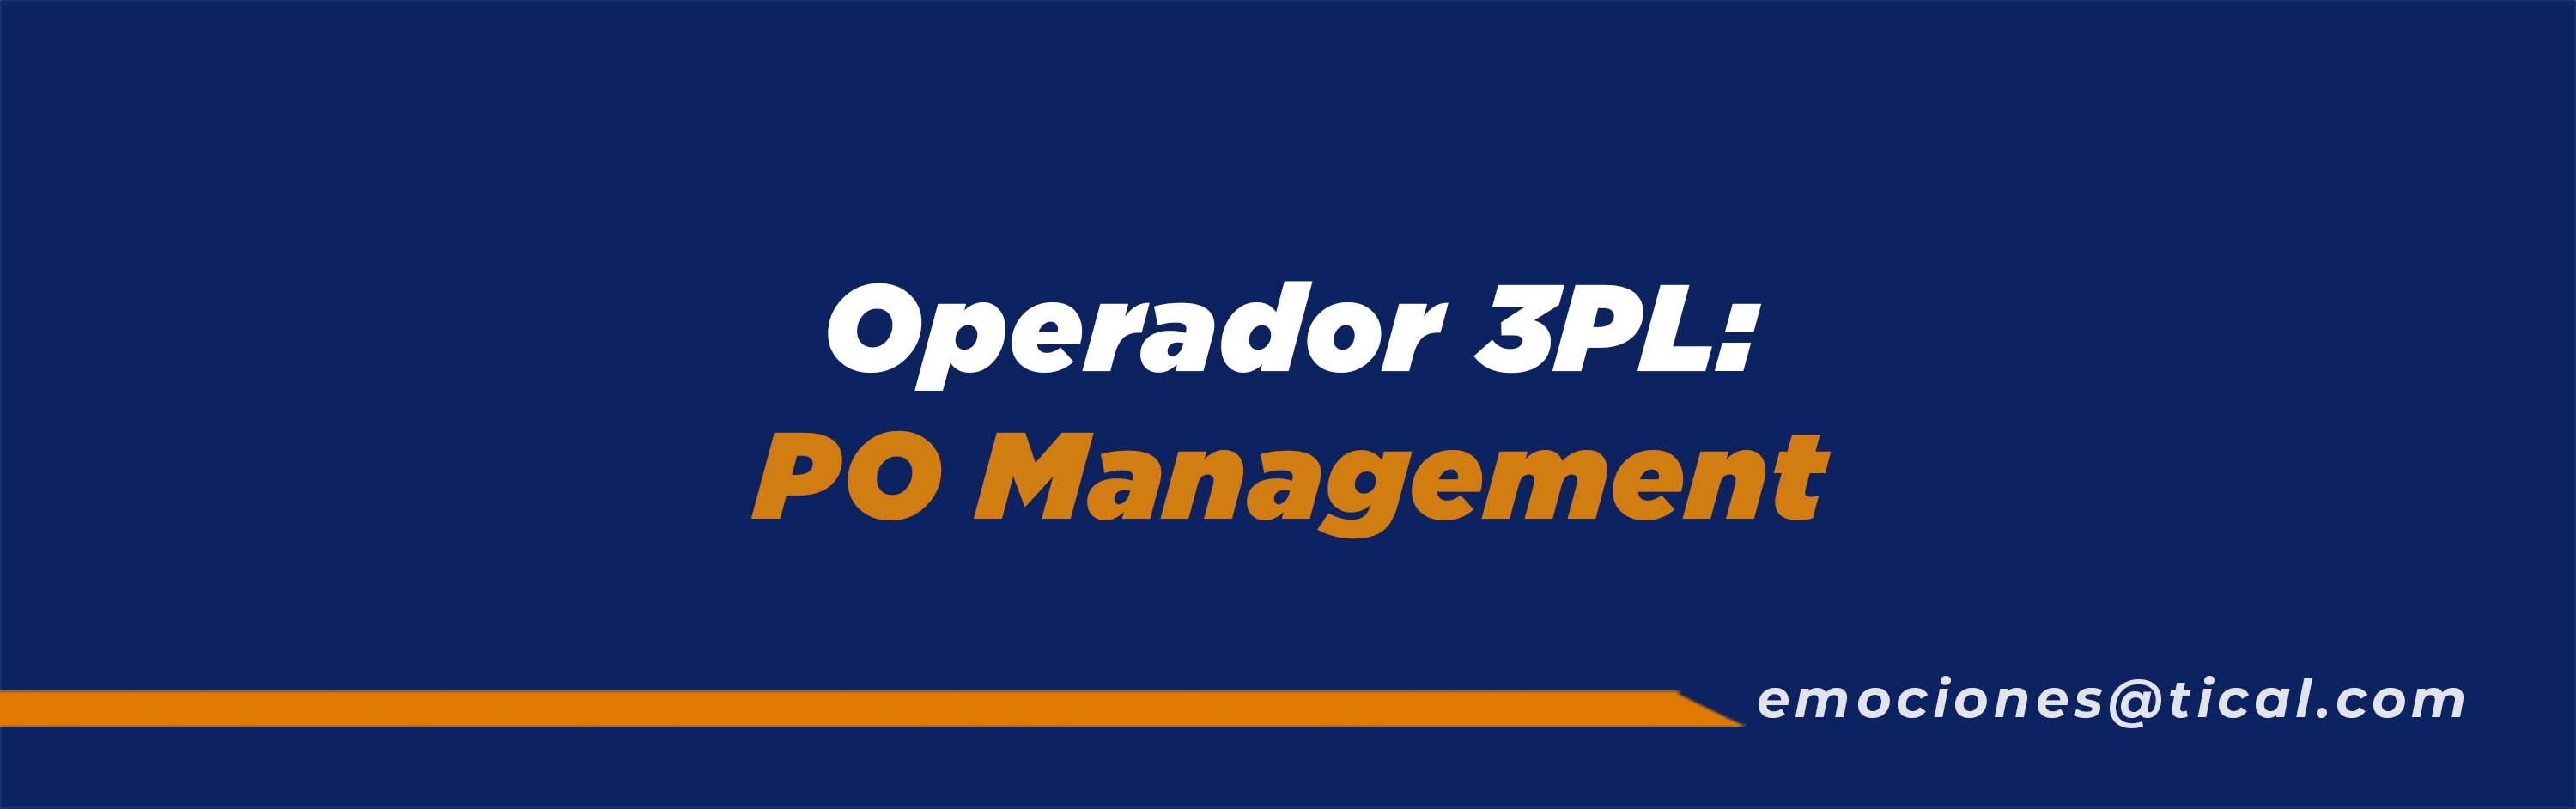 Operador 3PL: PO Management